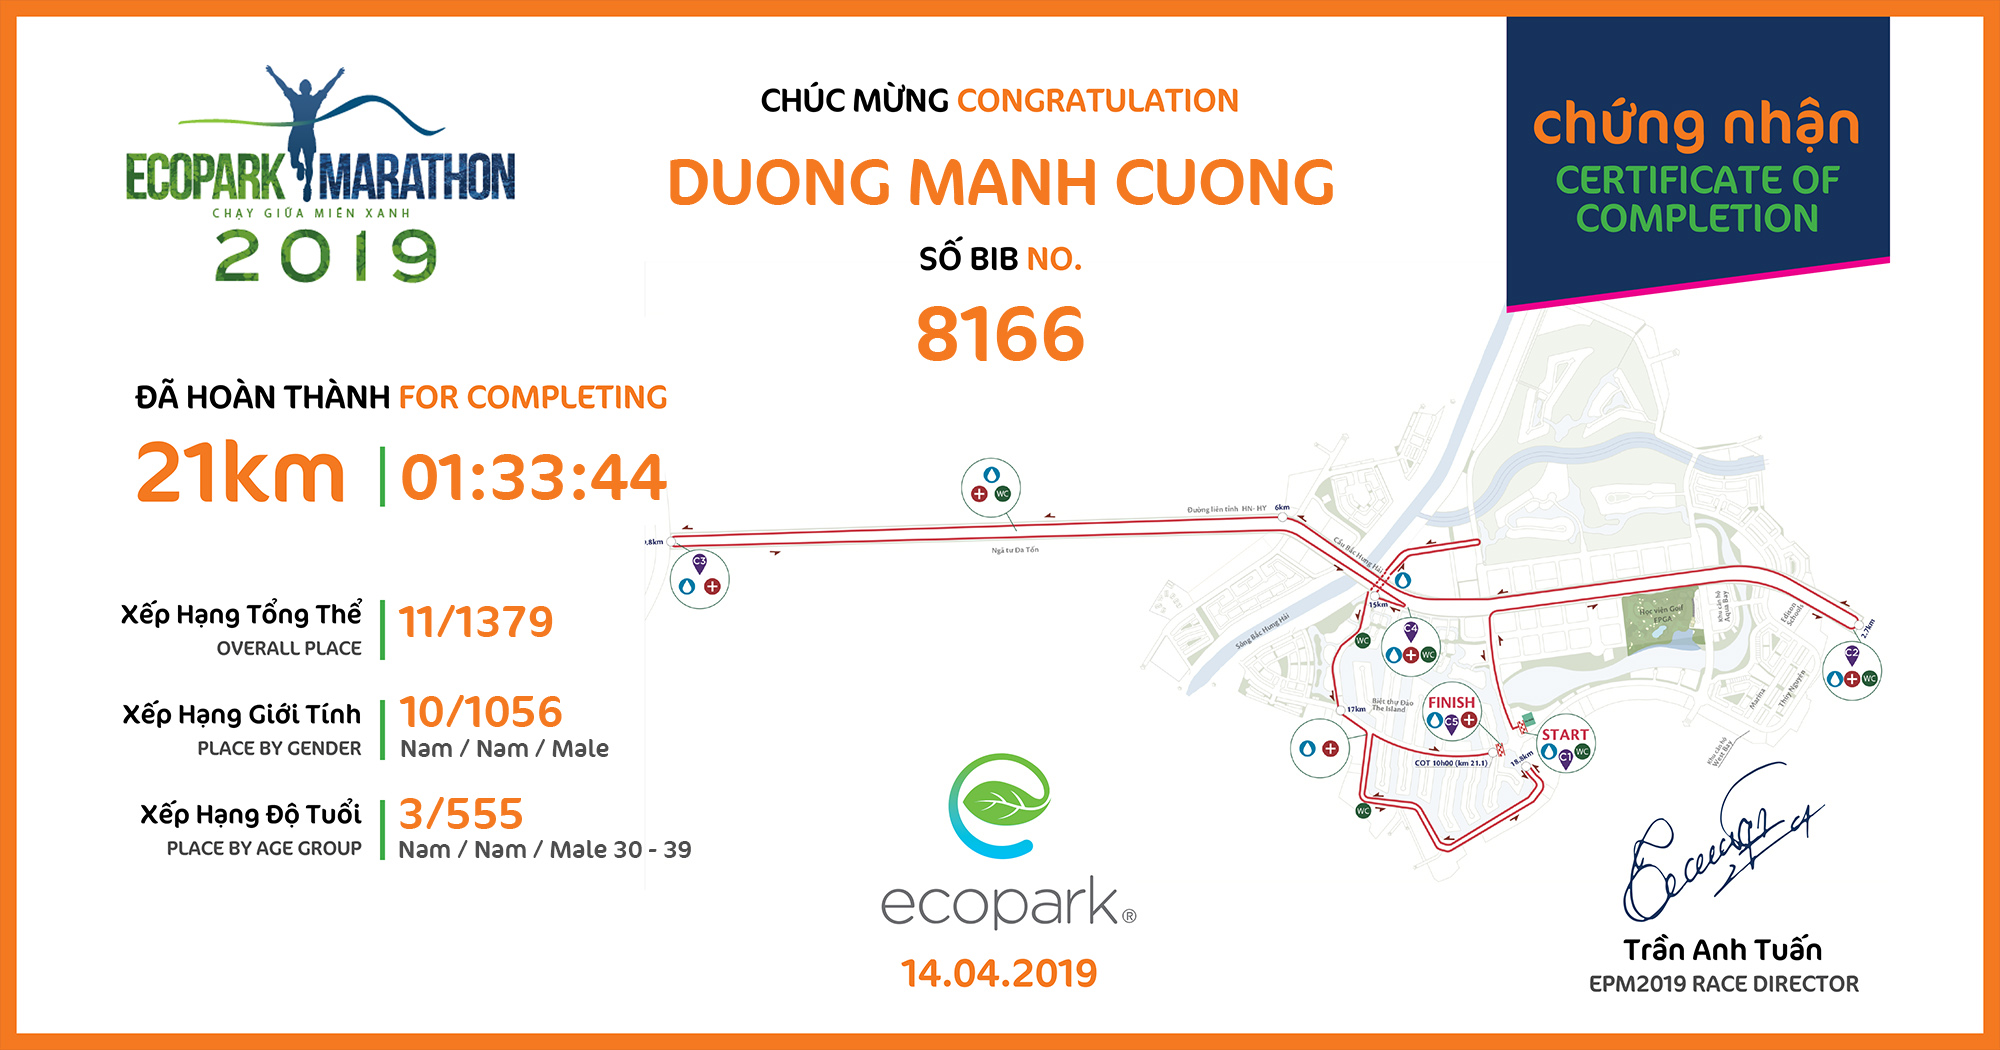 8166 - Duong Manh Cuong